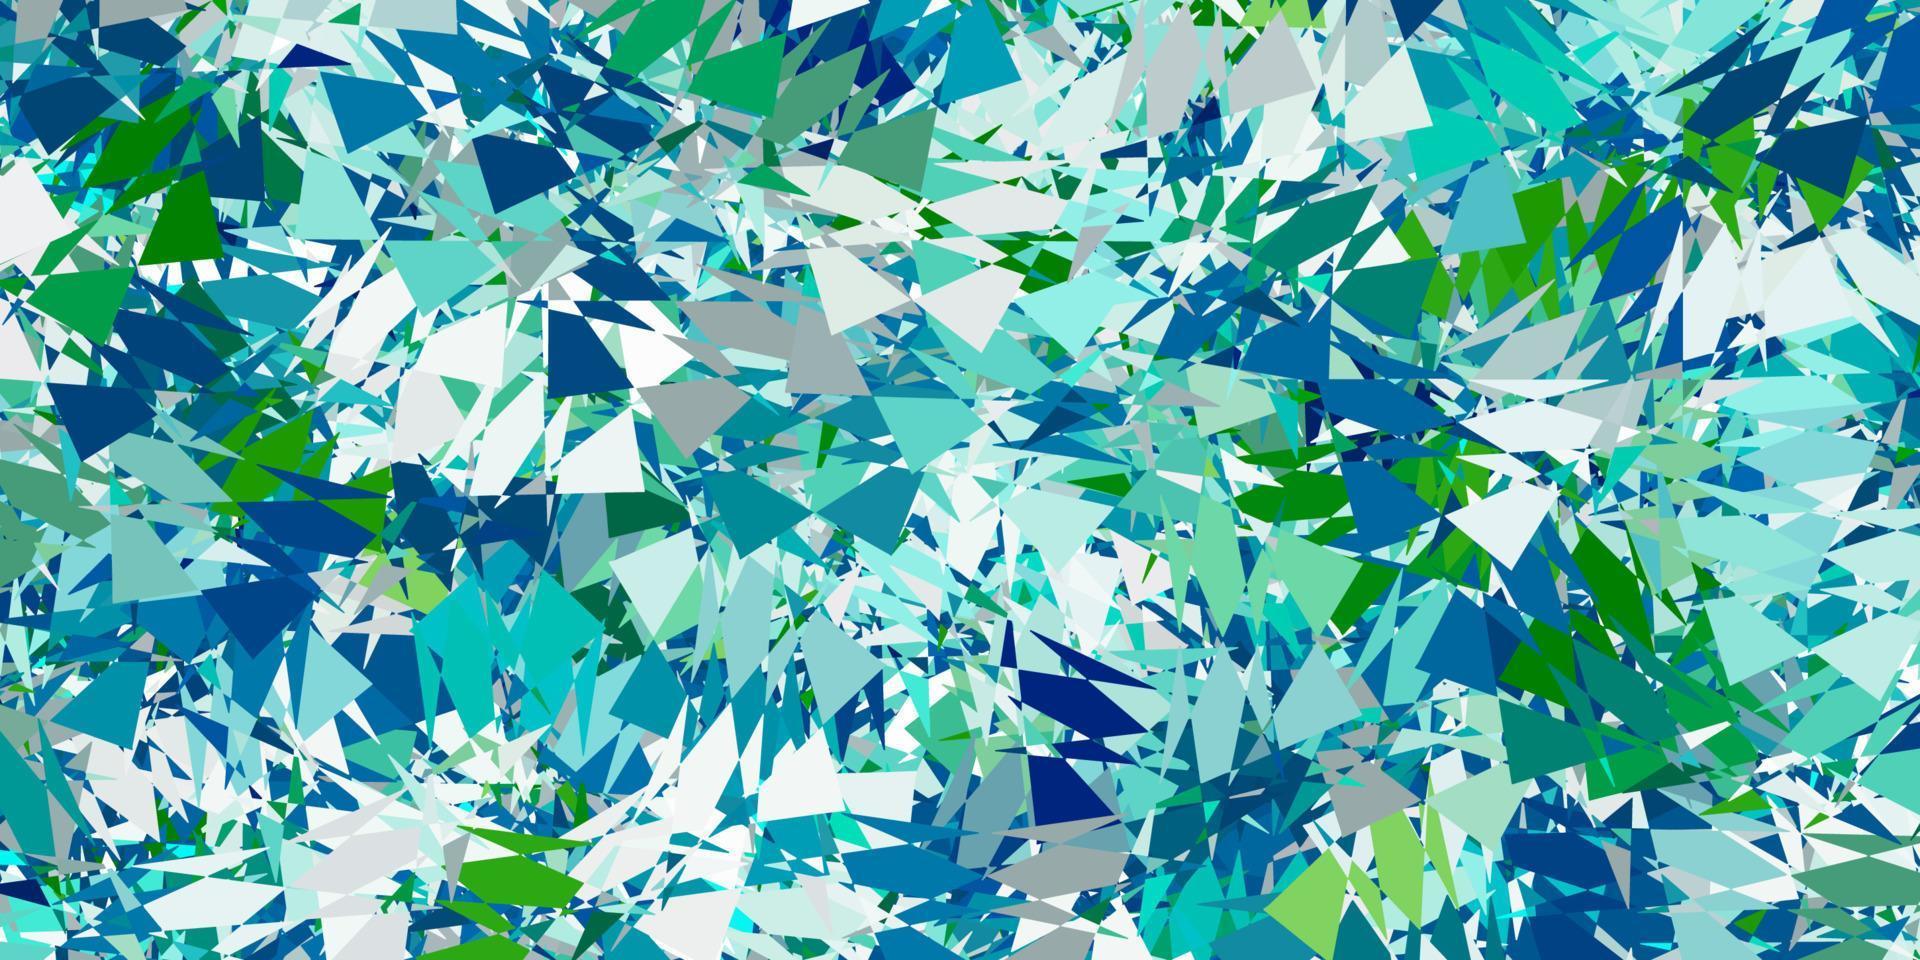 textura vector azul, verde claro com triângulos aleatórios.